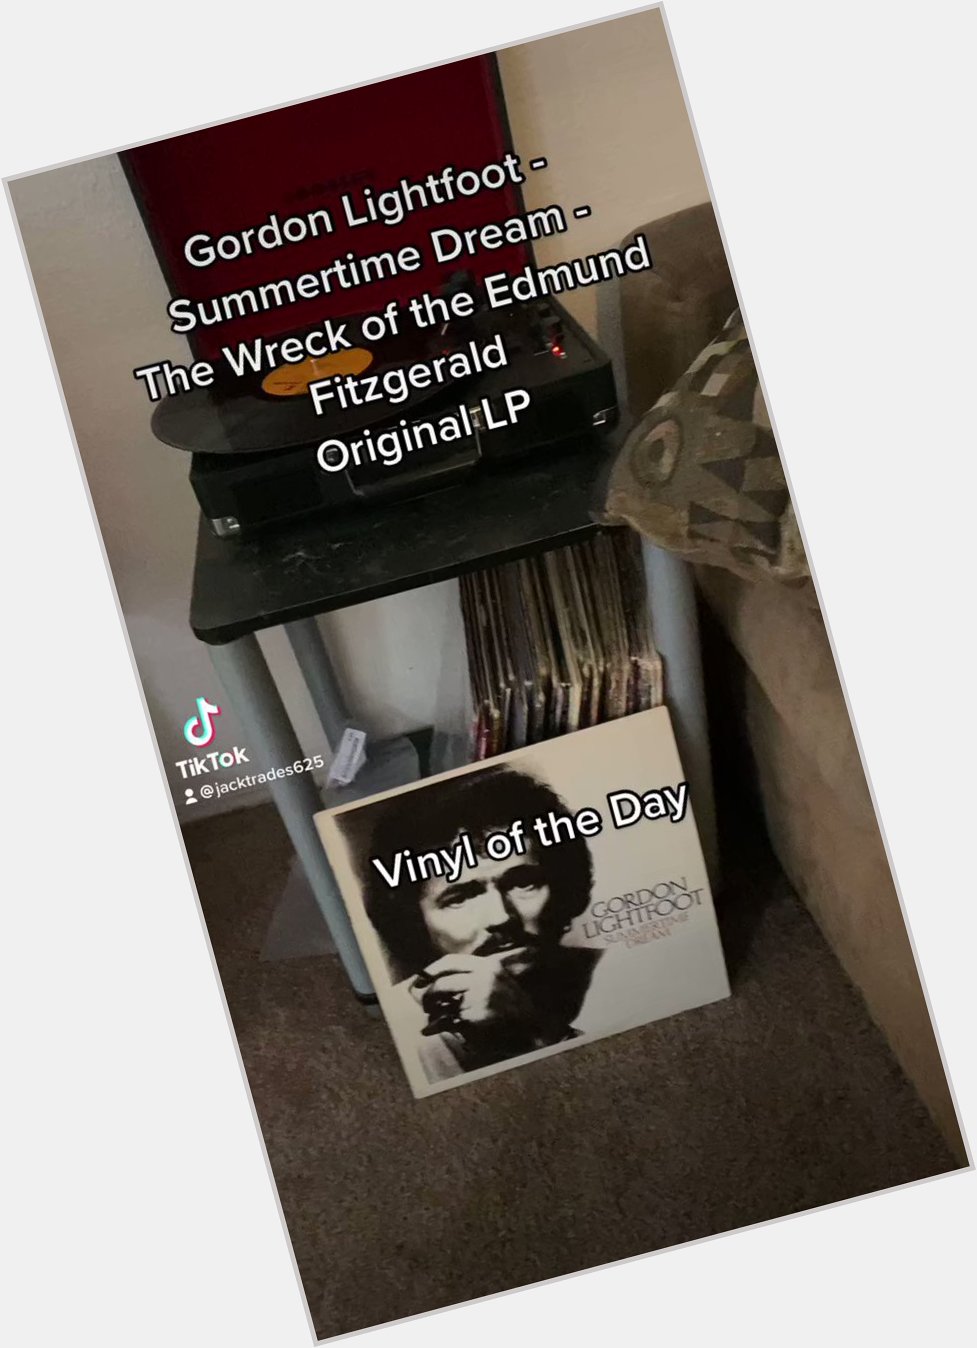  Happy birthday Gordon Lightfoot 